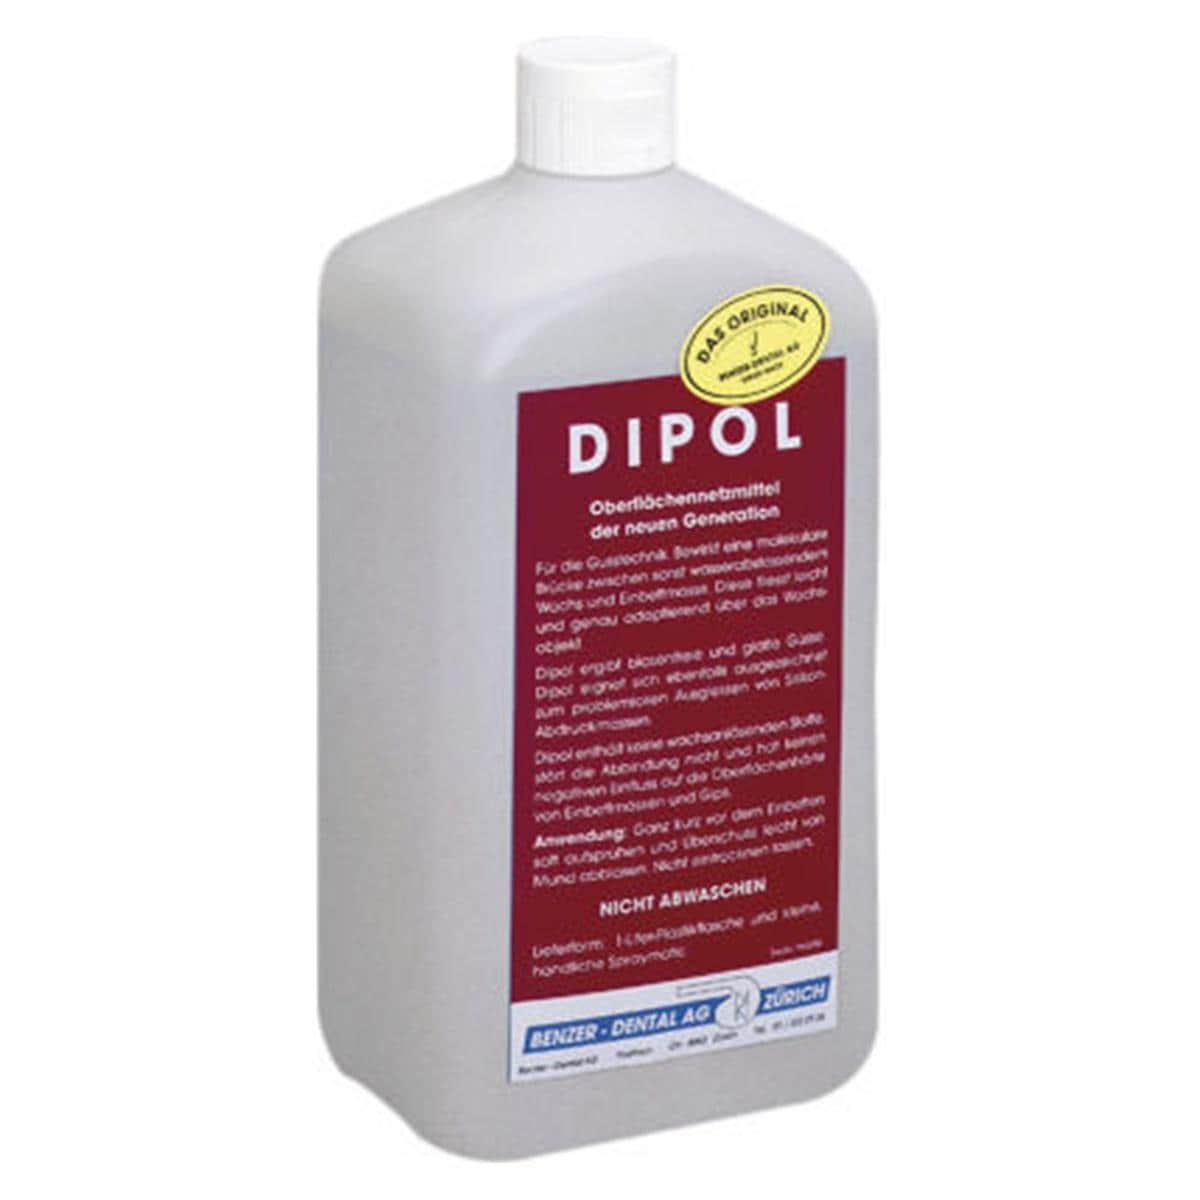 Dipol - Flasche 1 Liter und 1 leere Sprühflasche